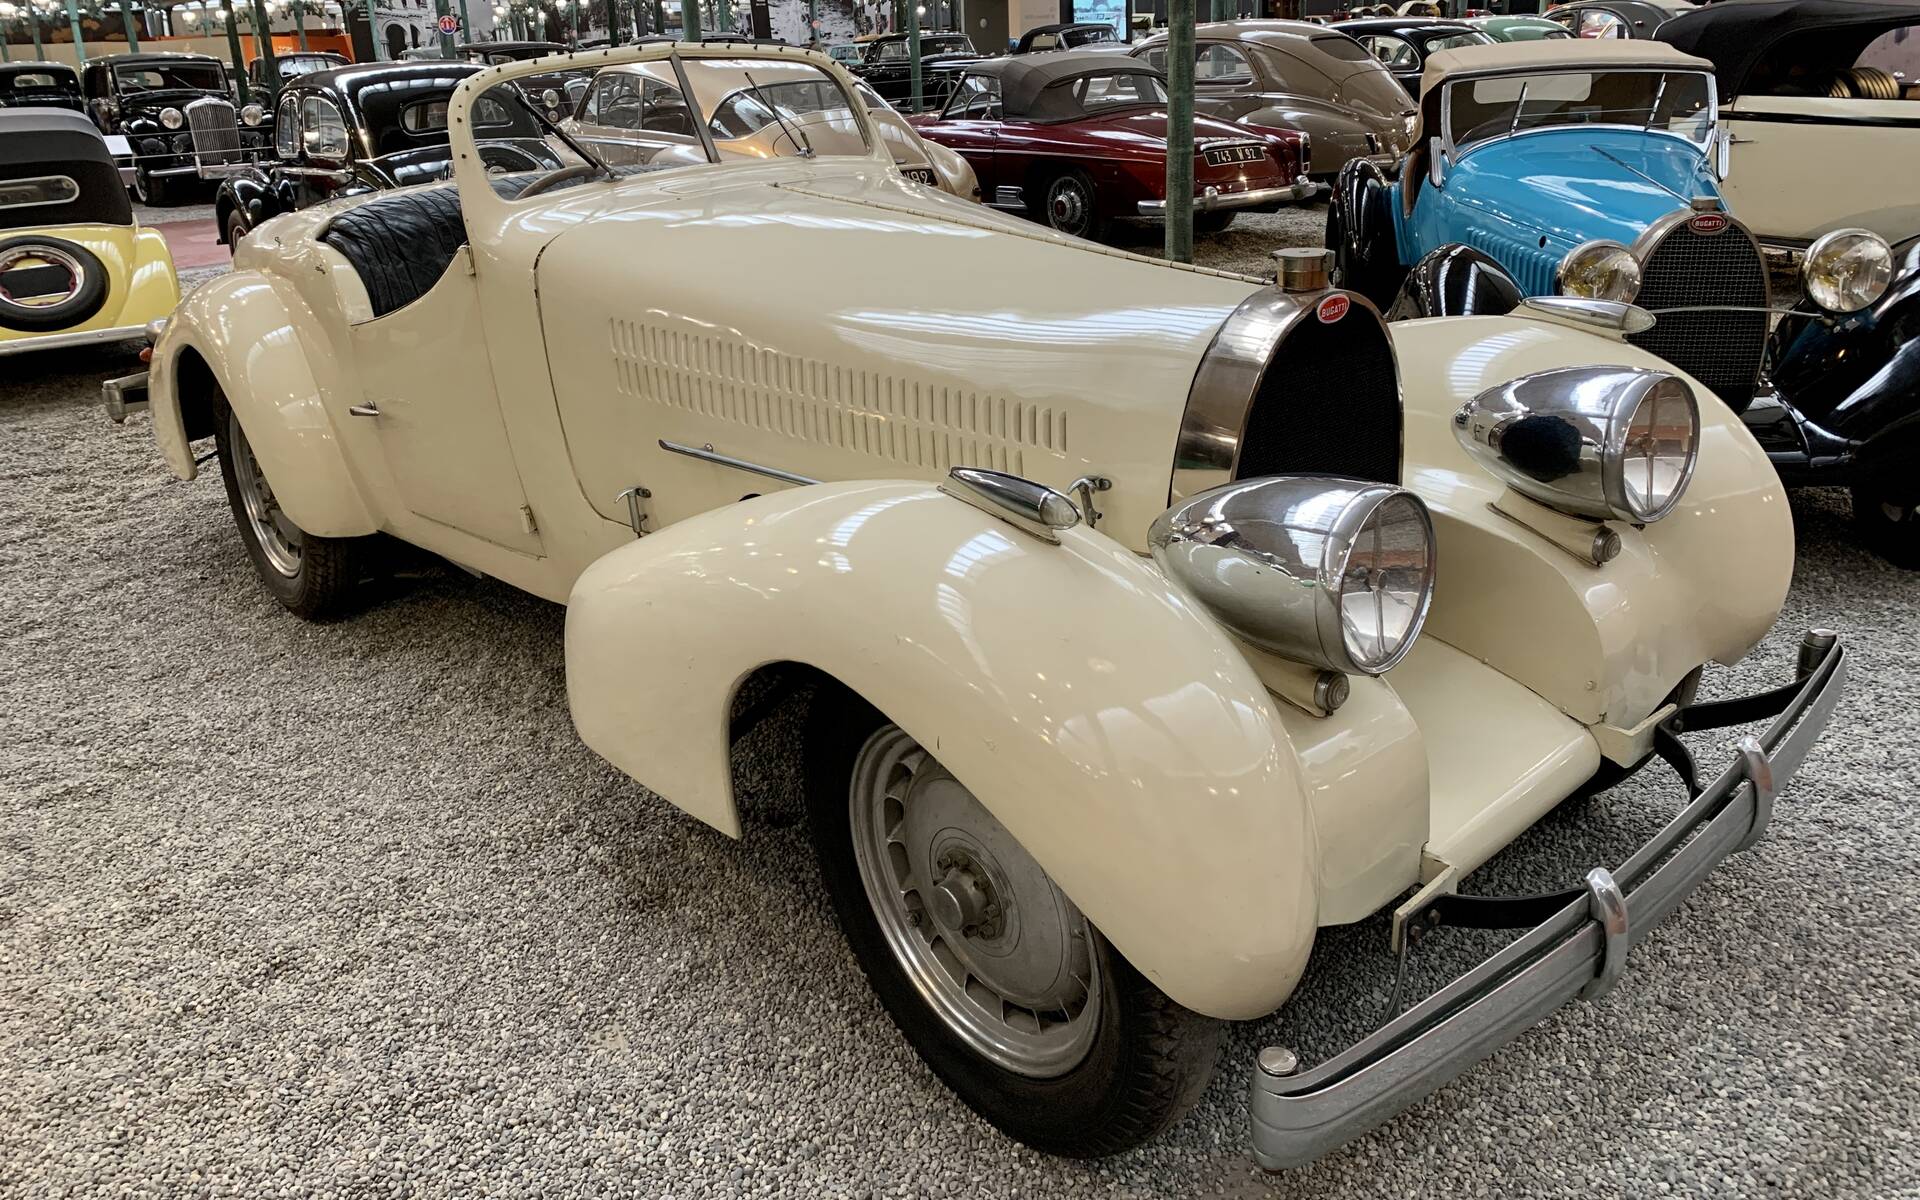 En photos : une centaine de Bugatti réunies dans un même musée 503050-en-photos-des-dizaines-de-bugatti-reunies-dans-un-meme-musee